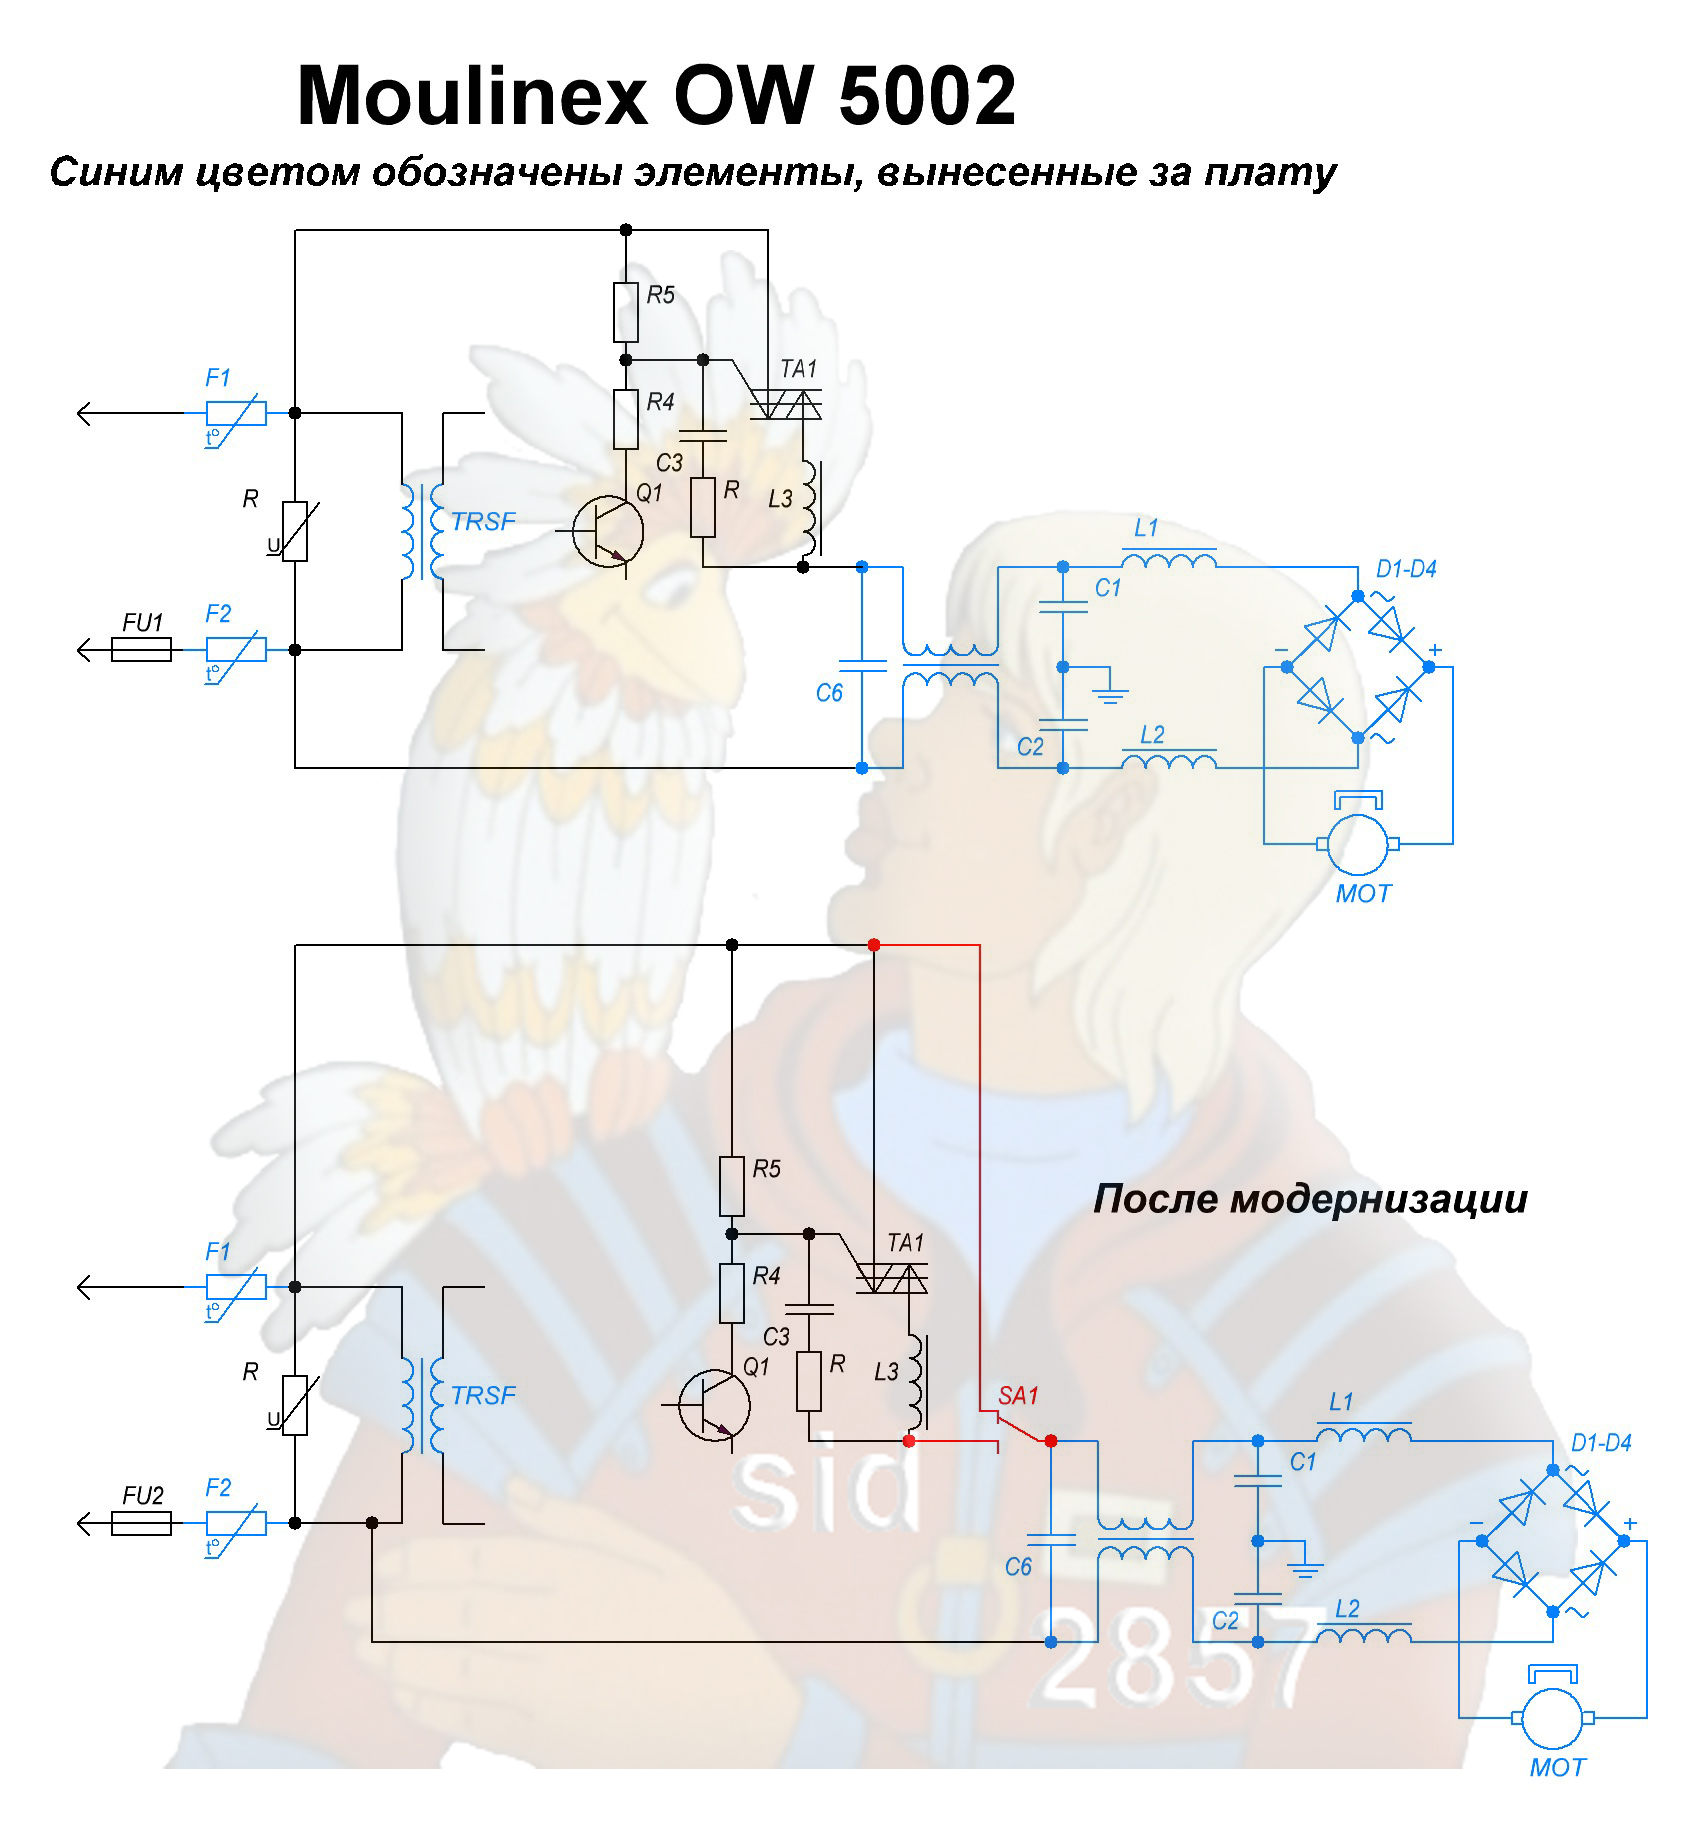 Reparación de parada de motor HP Moulinex 5002